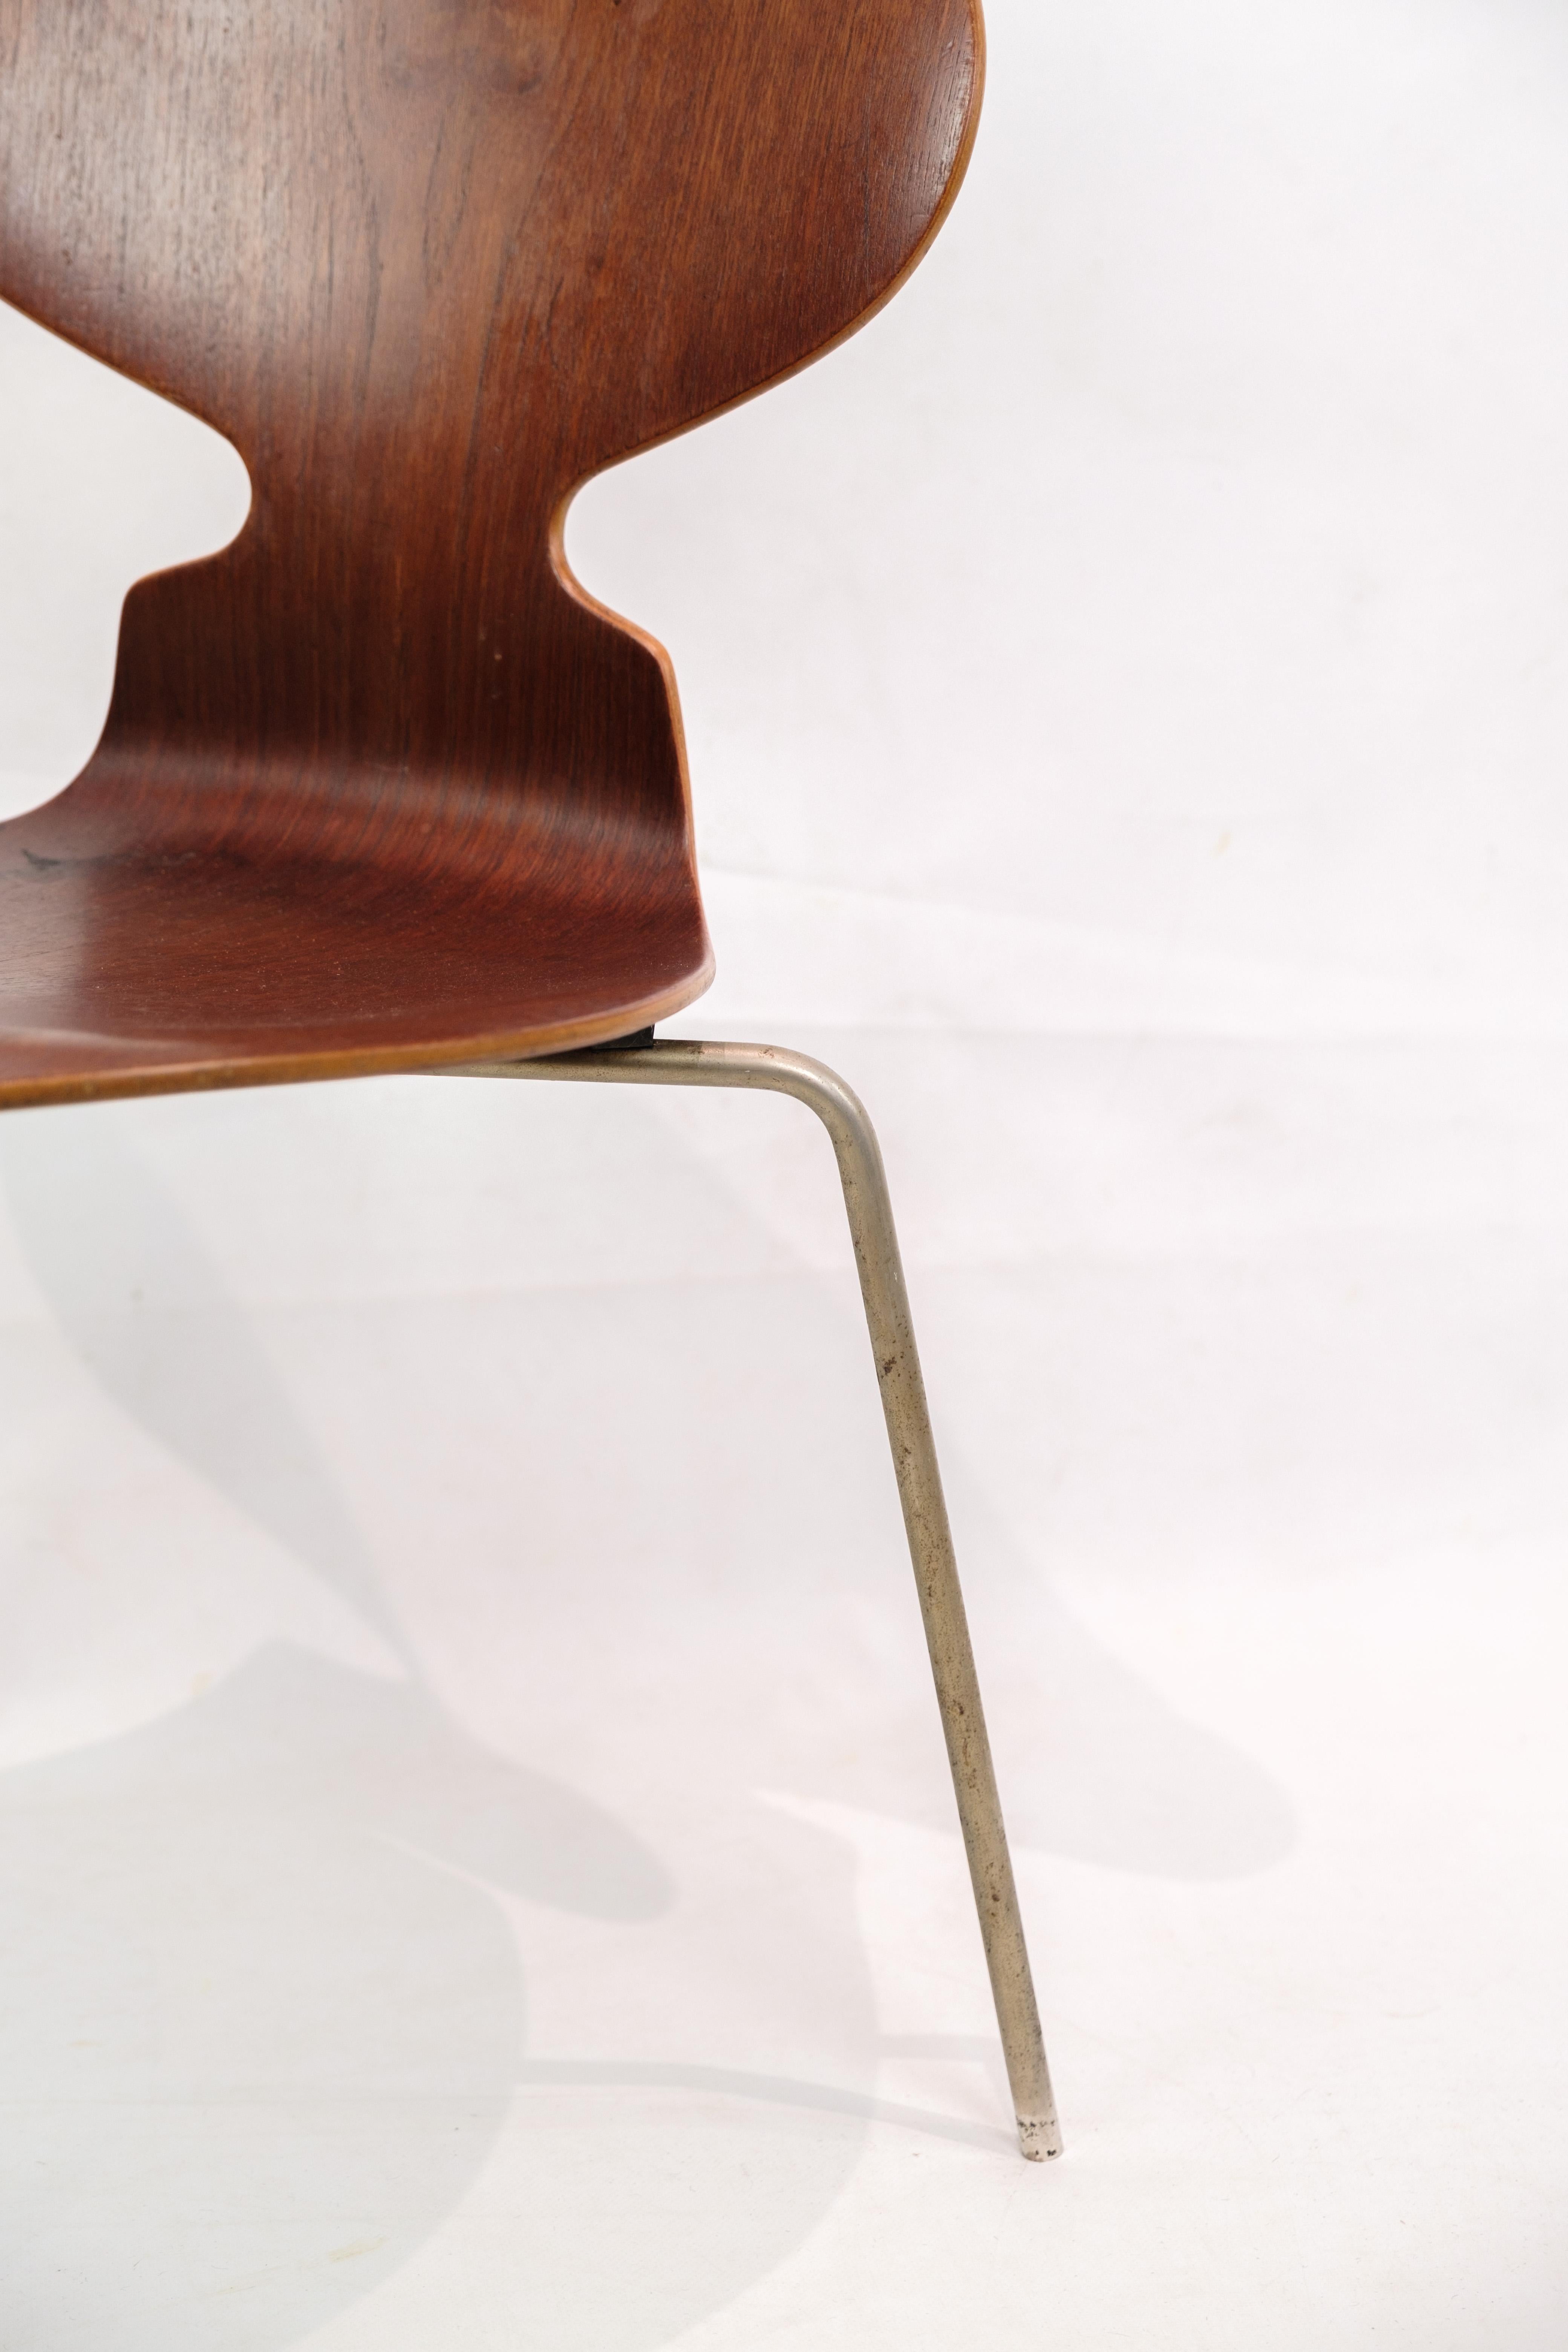 Danish Chair, Model 3100 Myren Made In Teak Arne Jacobsen By Fritz Hansen From 1950s For Sale